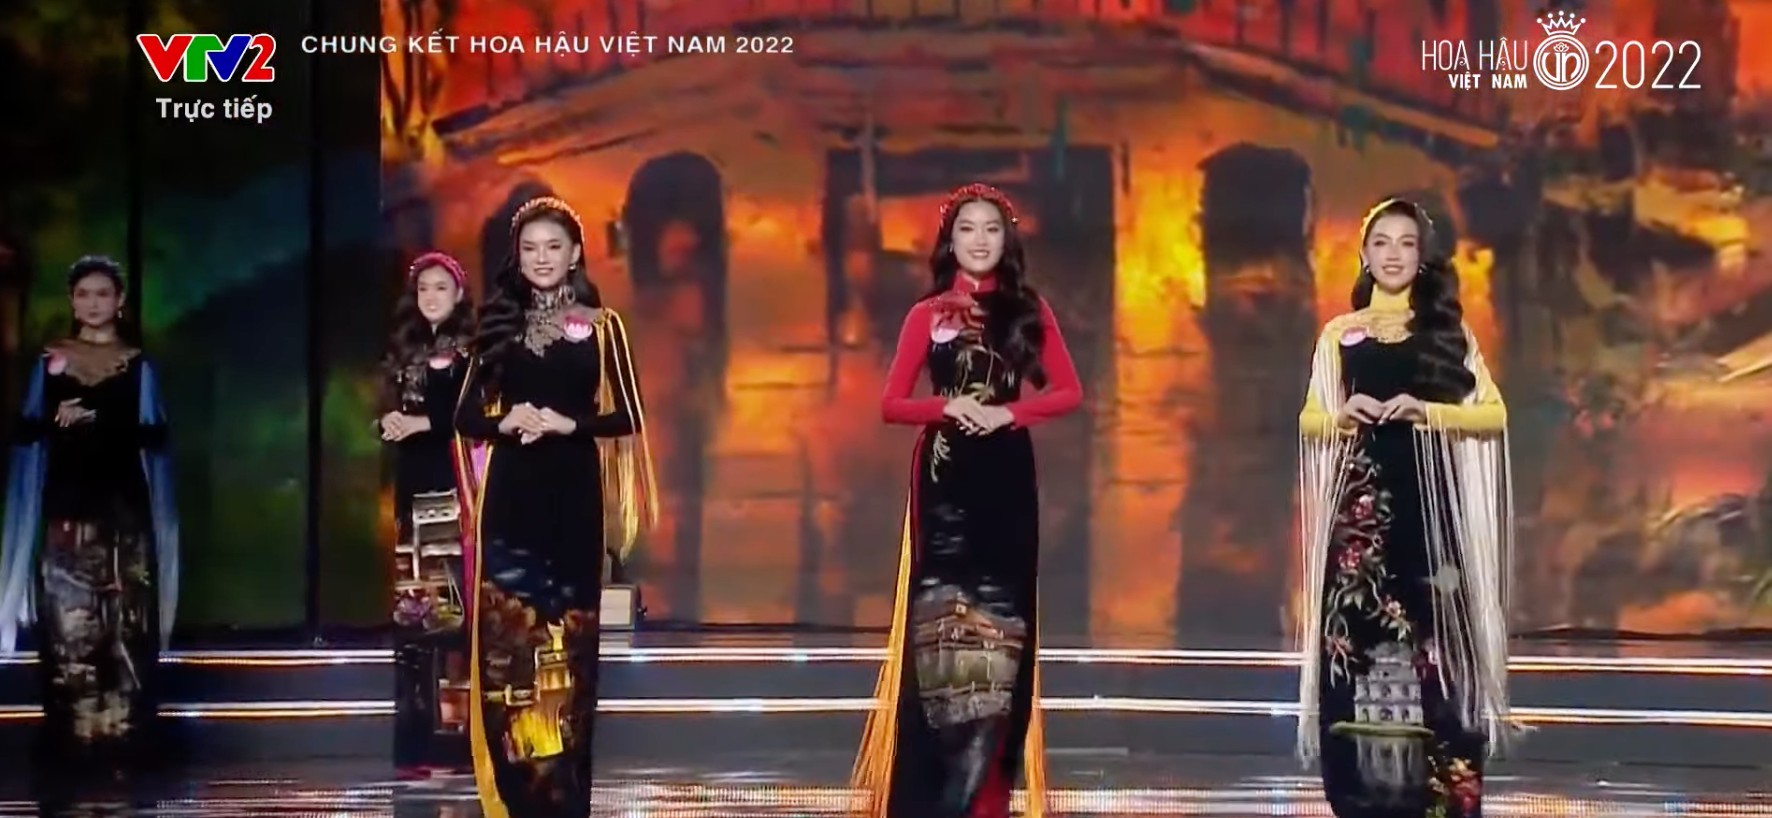 Chung kết Hoa hậu Việt Nam 2022: Tân Hoa hậu chính thức gọi tên Huỳnh Thị Thanh Thuỷ - 43